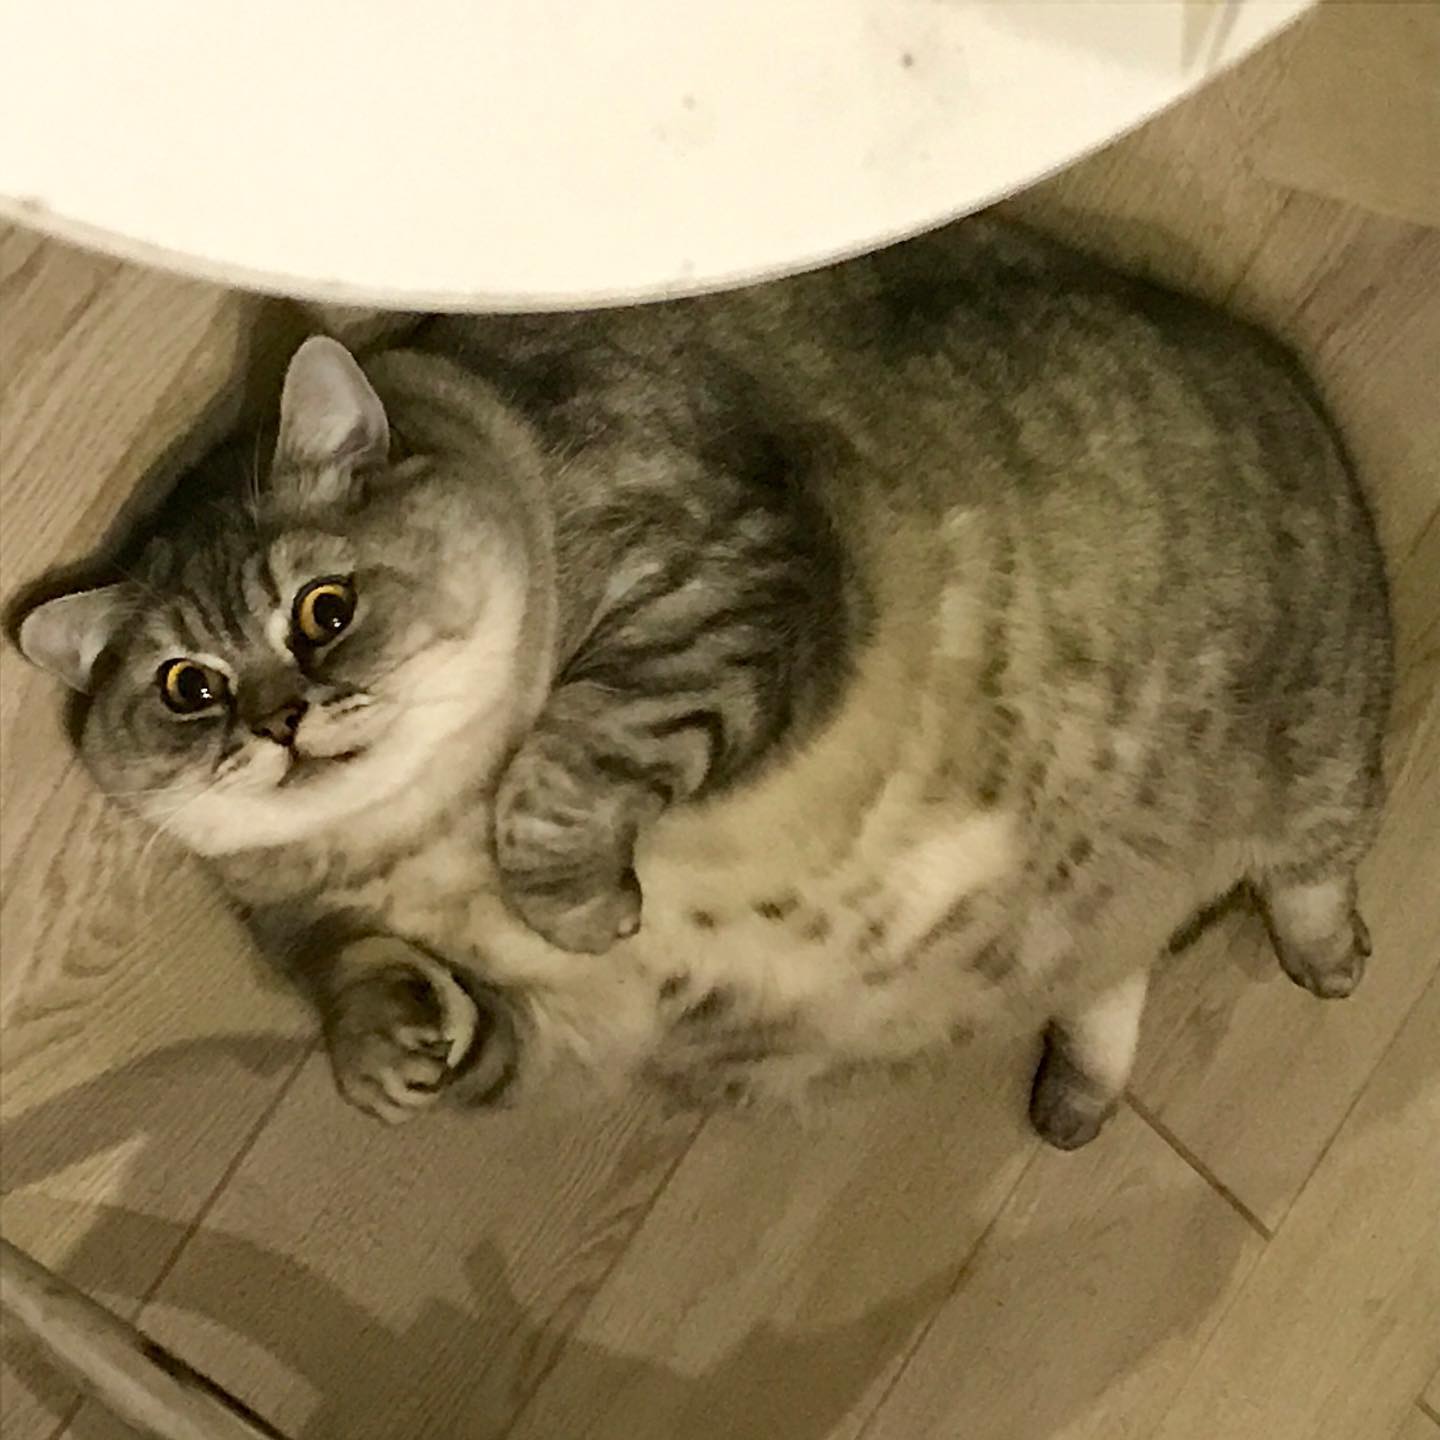 เจ้าของแมวอ้วนที่สุดในโลก เจอข้อหาทารุณกรรมสัตว์ หลังขุนจนตัวกลมไม่เห็นคอ